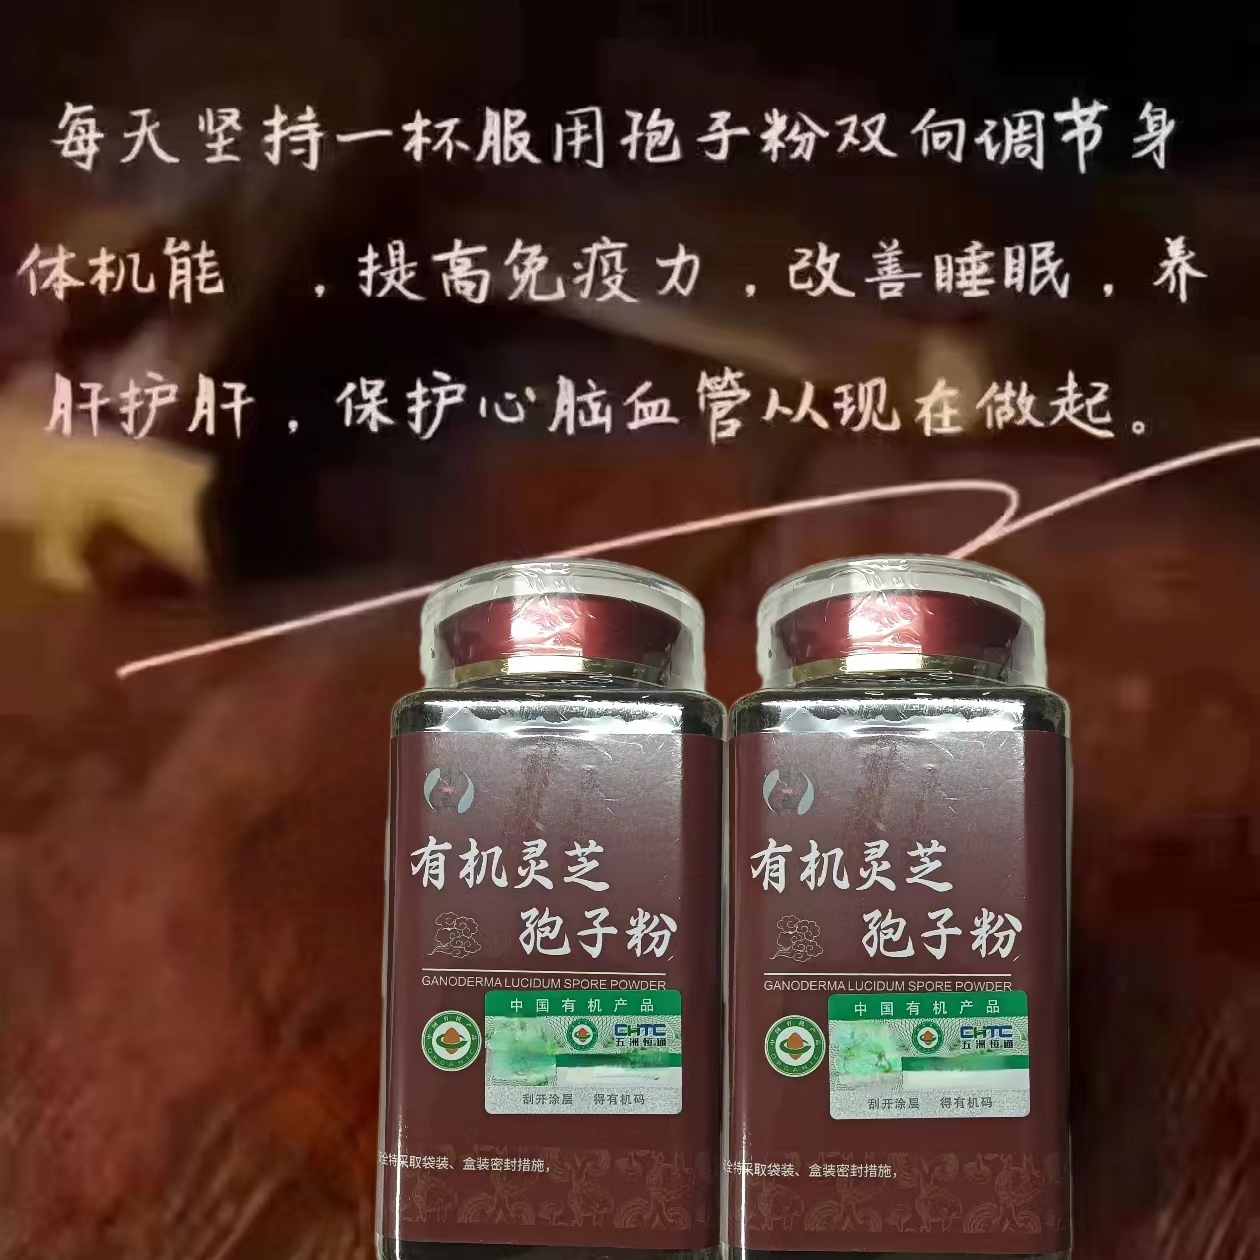 于立有机灵芝孢子粉由中国人民保险承保250克/瓶